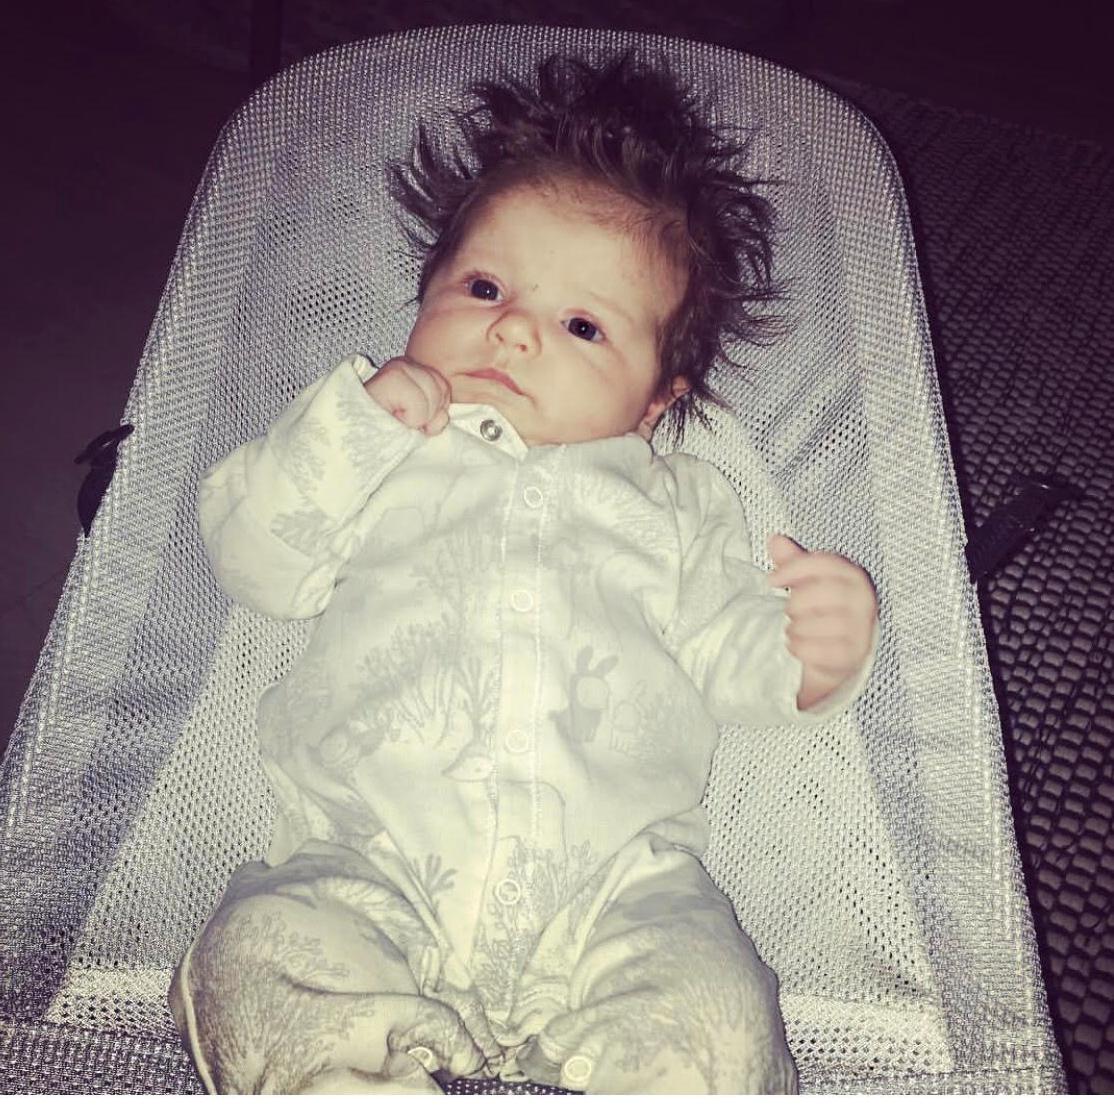 Jennie Olofsson från Torslanda Göteborg delar med sig av en bild på sin dotter Nike: ”Min dotter på 16 månader föddes också med ett fantastiskt hårsvall”.